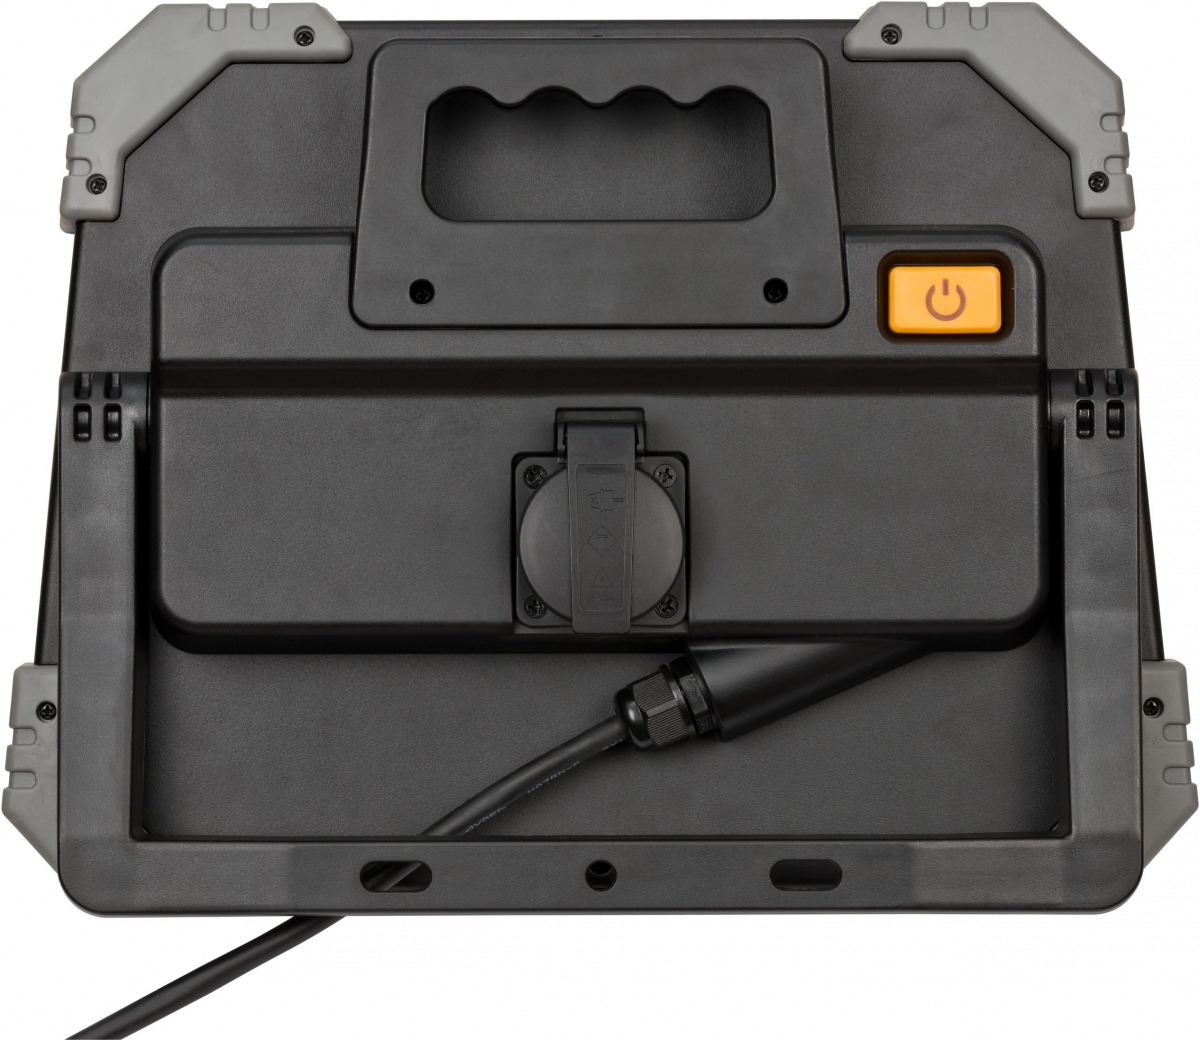 Foco LED portátil DINORA 8010 de 8000 lm con toma de corriente y protección IP54 BRE-1171580020 | FOCOS / ILUMINACIÓN